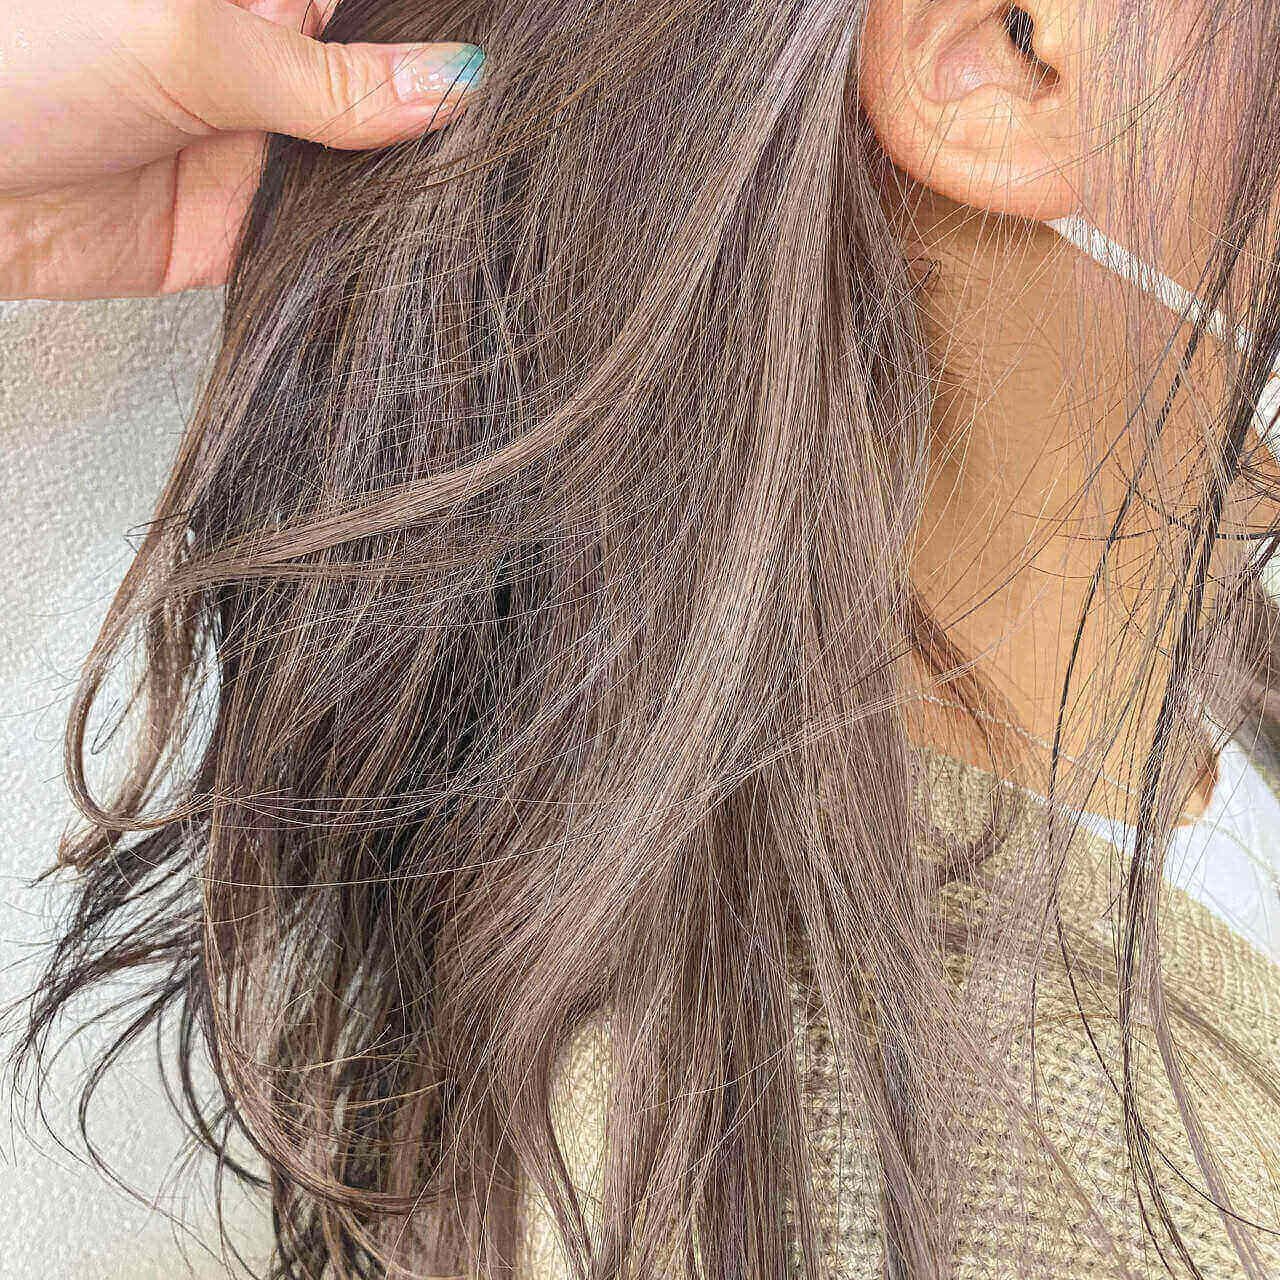 Nhuộm tóc giấu màu bạch kim: Tóc bạch kim hiện đang là một xu hướng trong làng thời trang, khiến phái đẹp không khỏi háo hức. Nếu bạn muốn khám phá thêm về kiểu nhuộm tóc độc đáo này, hãy xem ngay hình ảnh liên quan đến từ khóa \